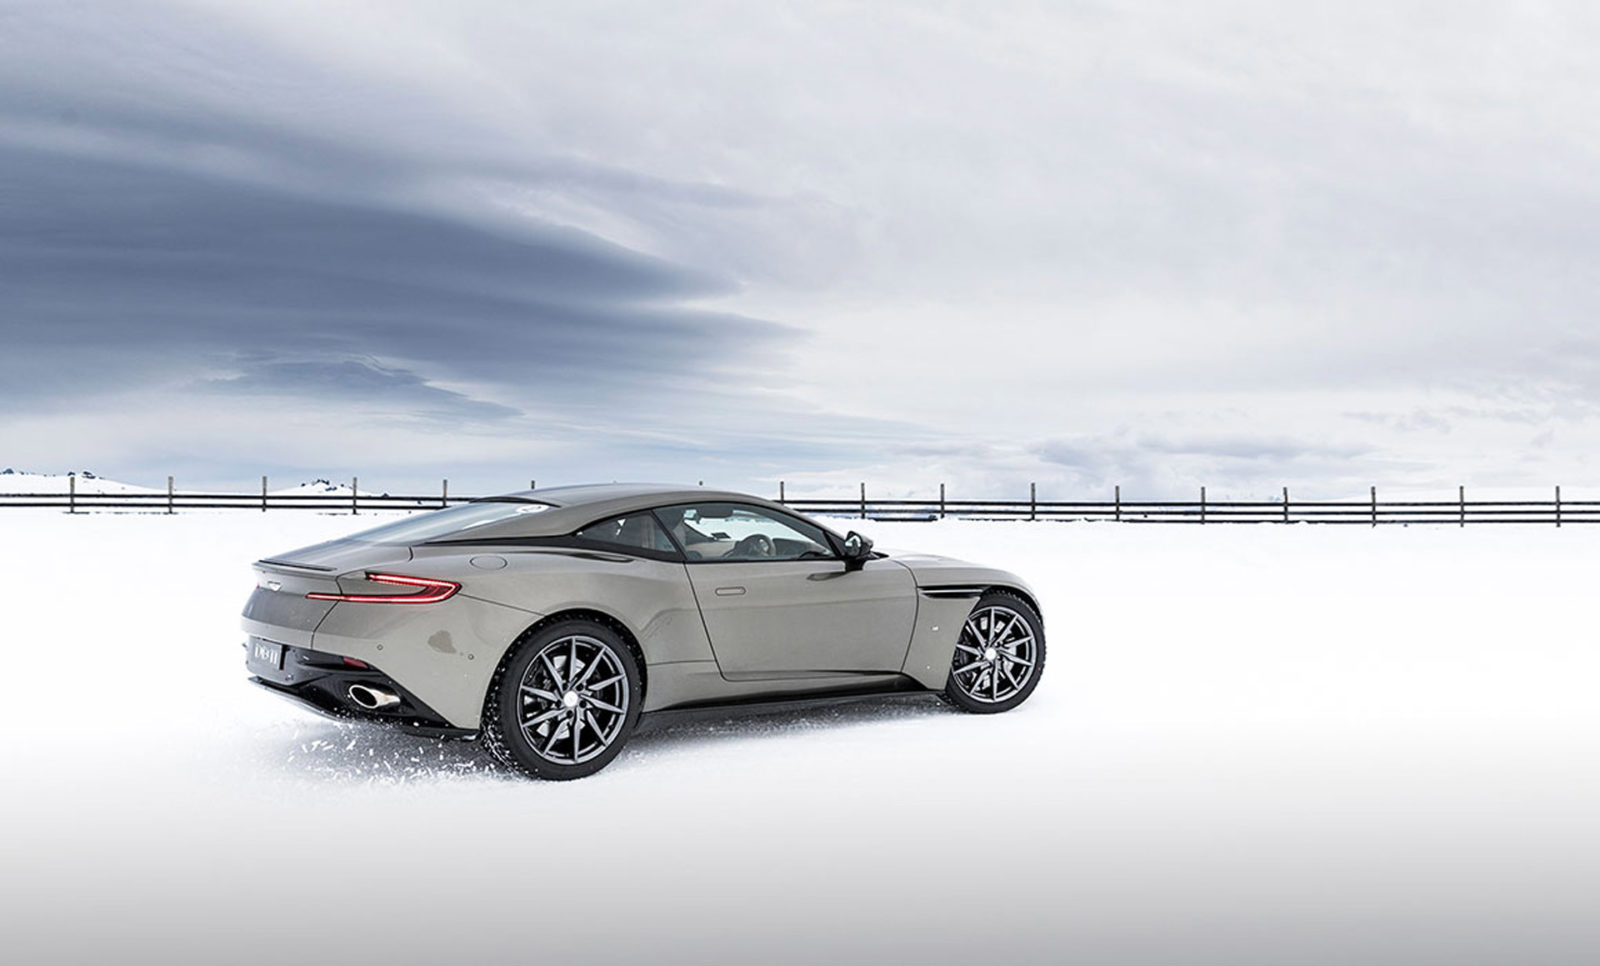 Hokkaido Aston Martin on Ice